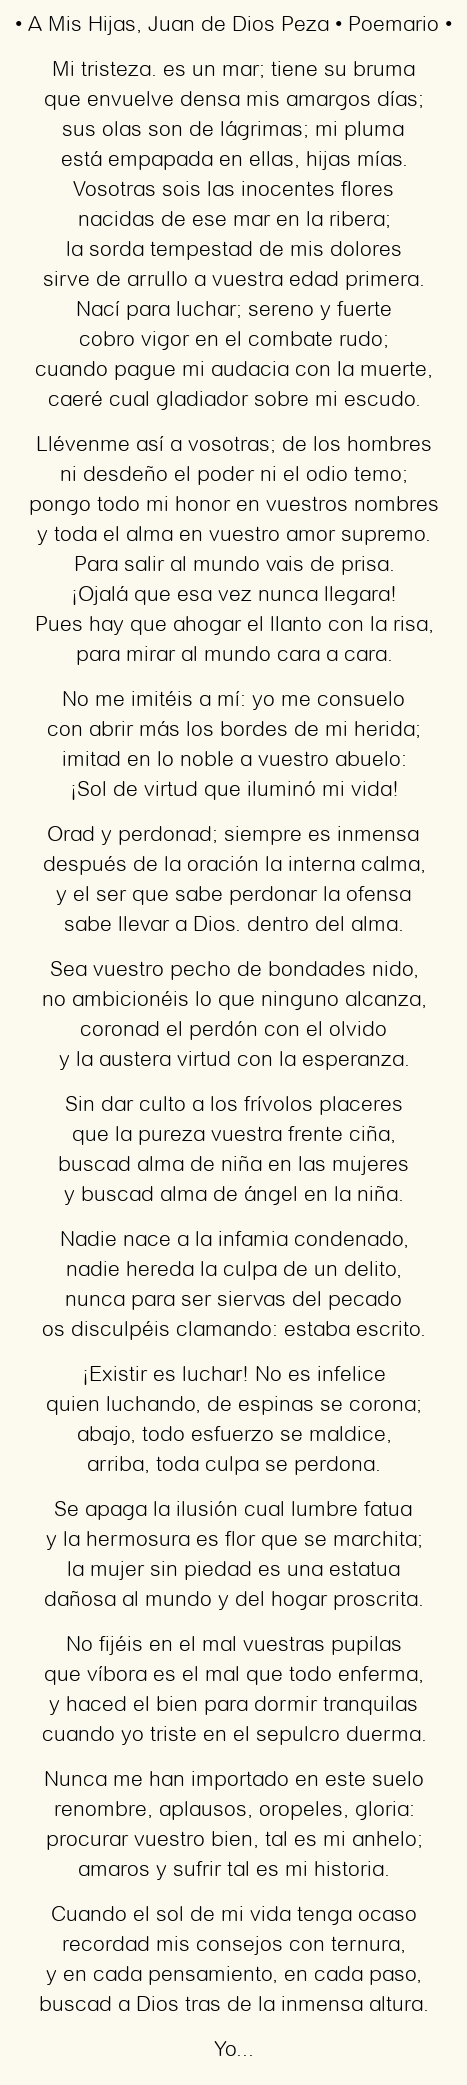 Imagen con el poema A Mis Hijas, por Juan de Dios Peza